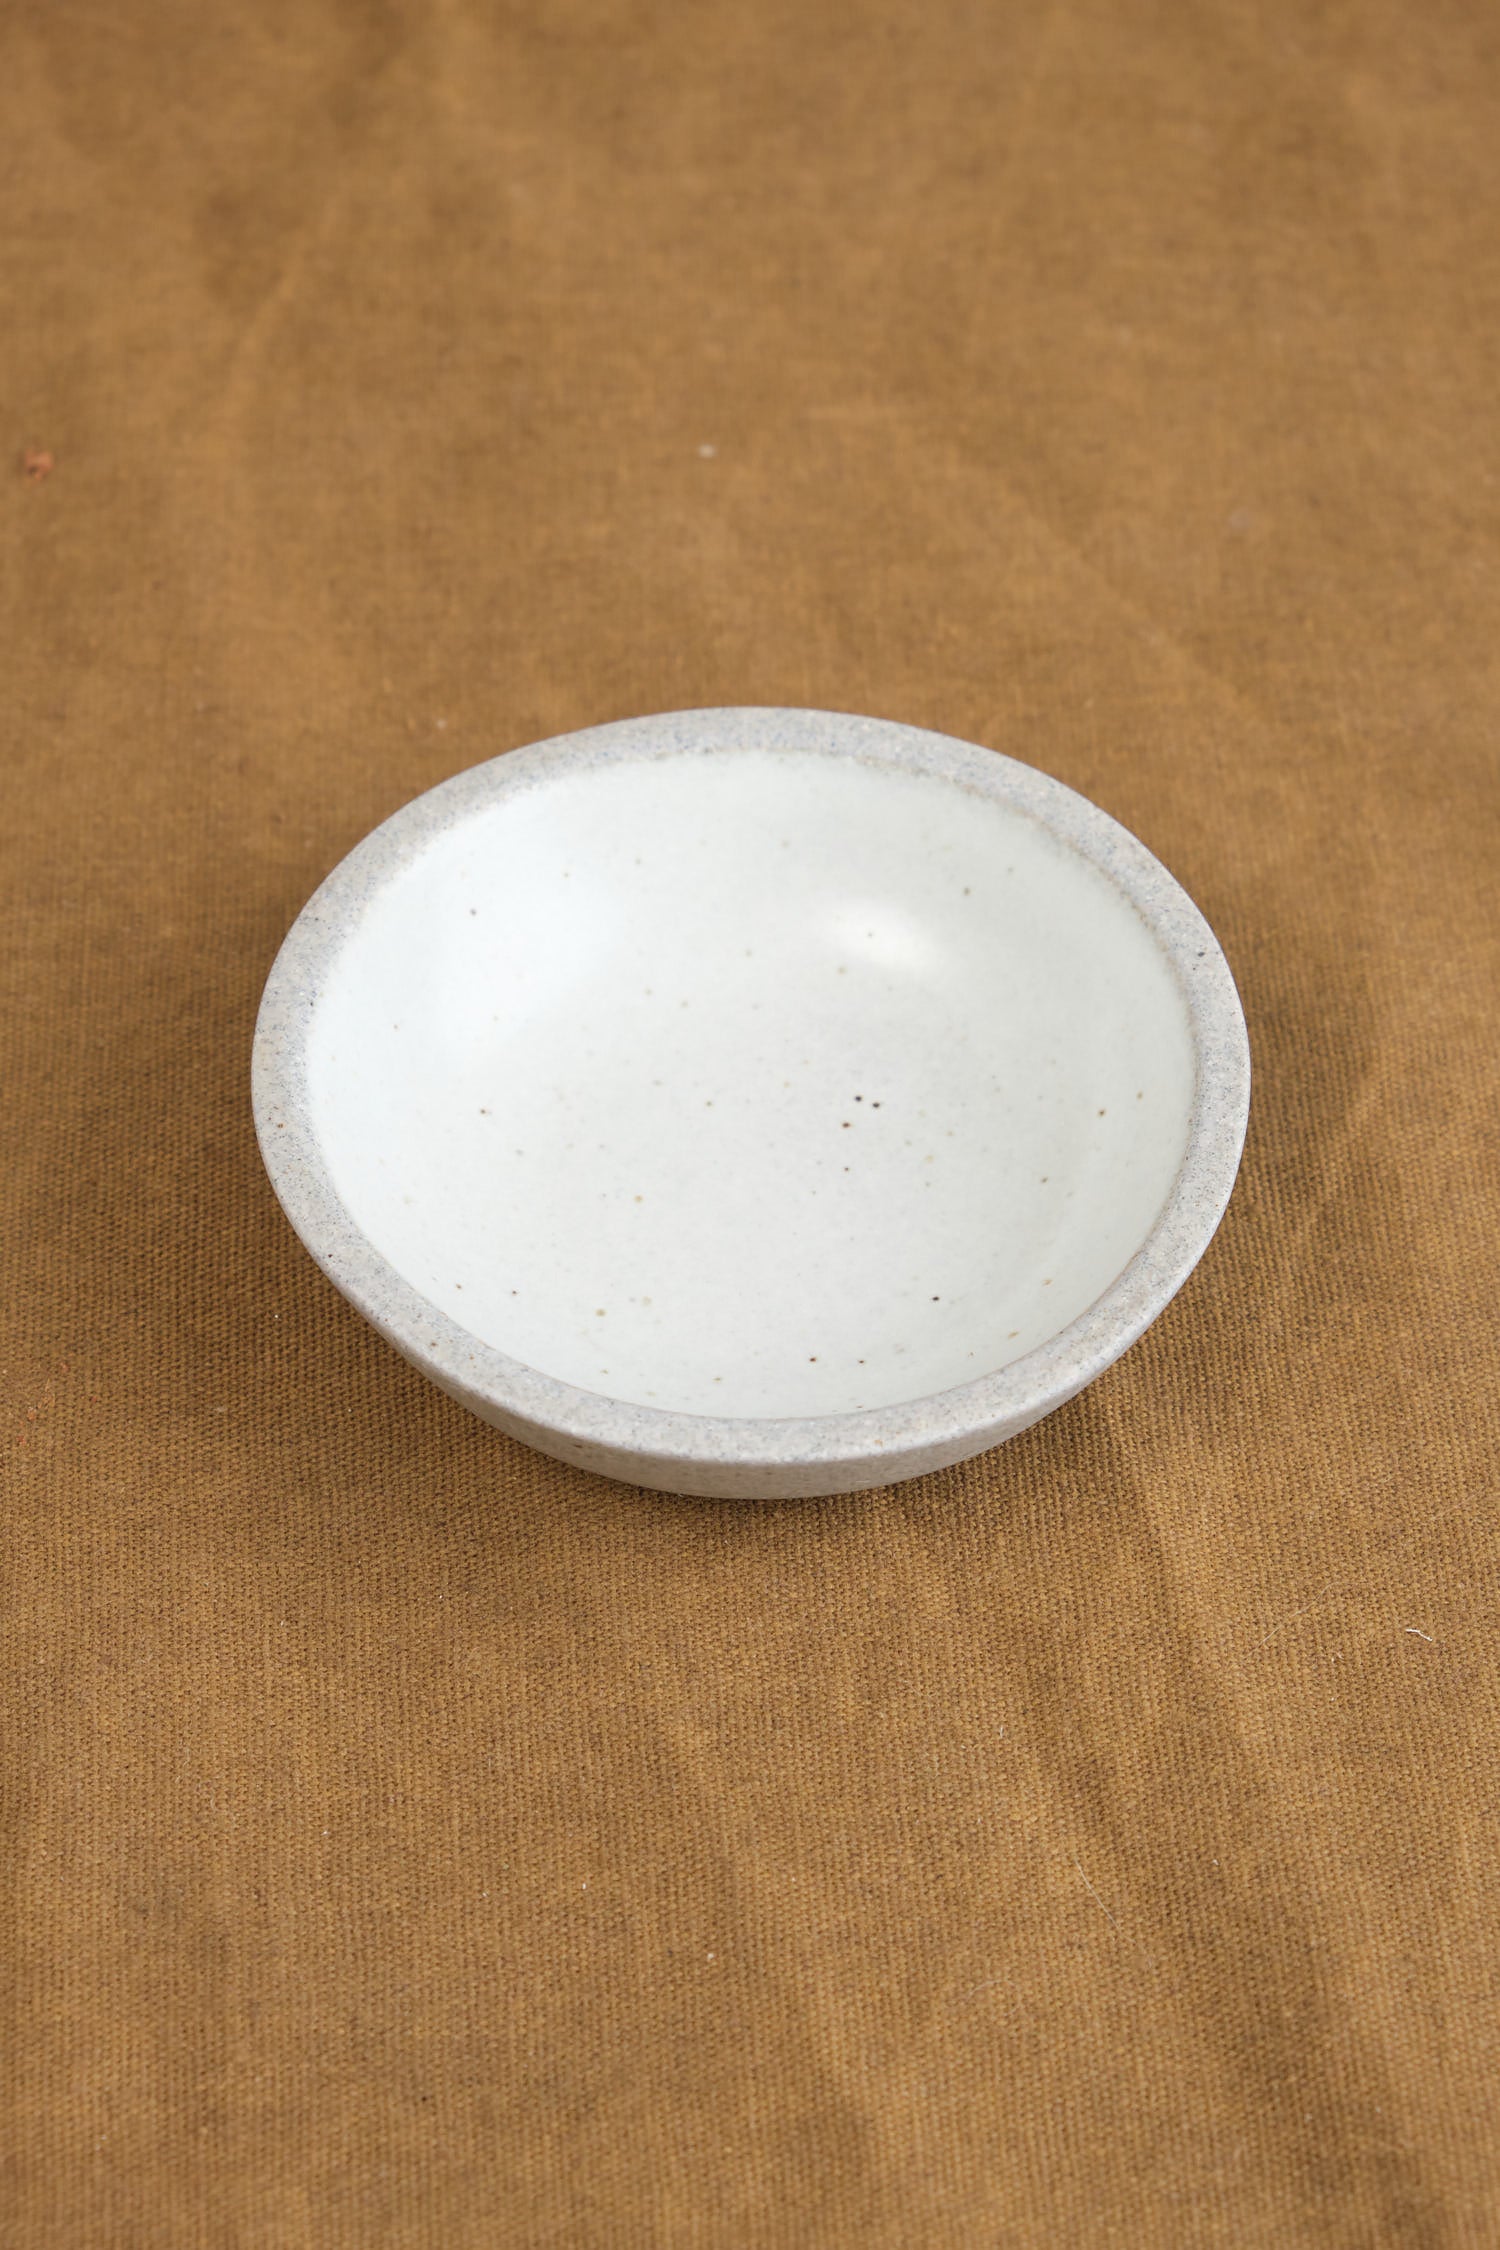 Mini Stillness Bowl in Greystone/Snow White on table